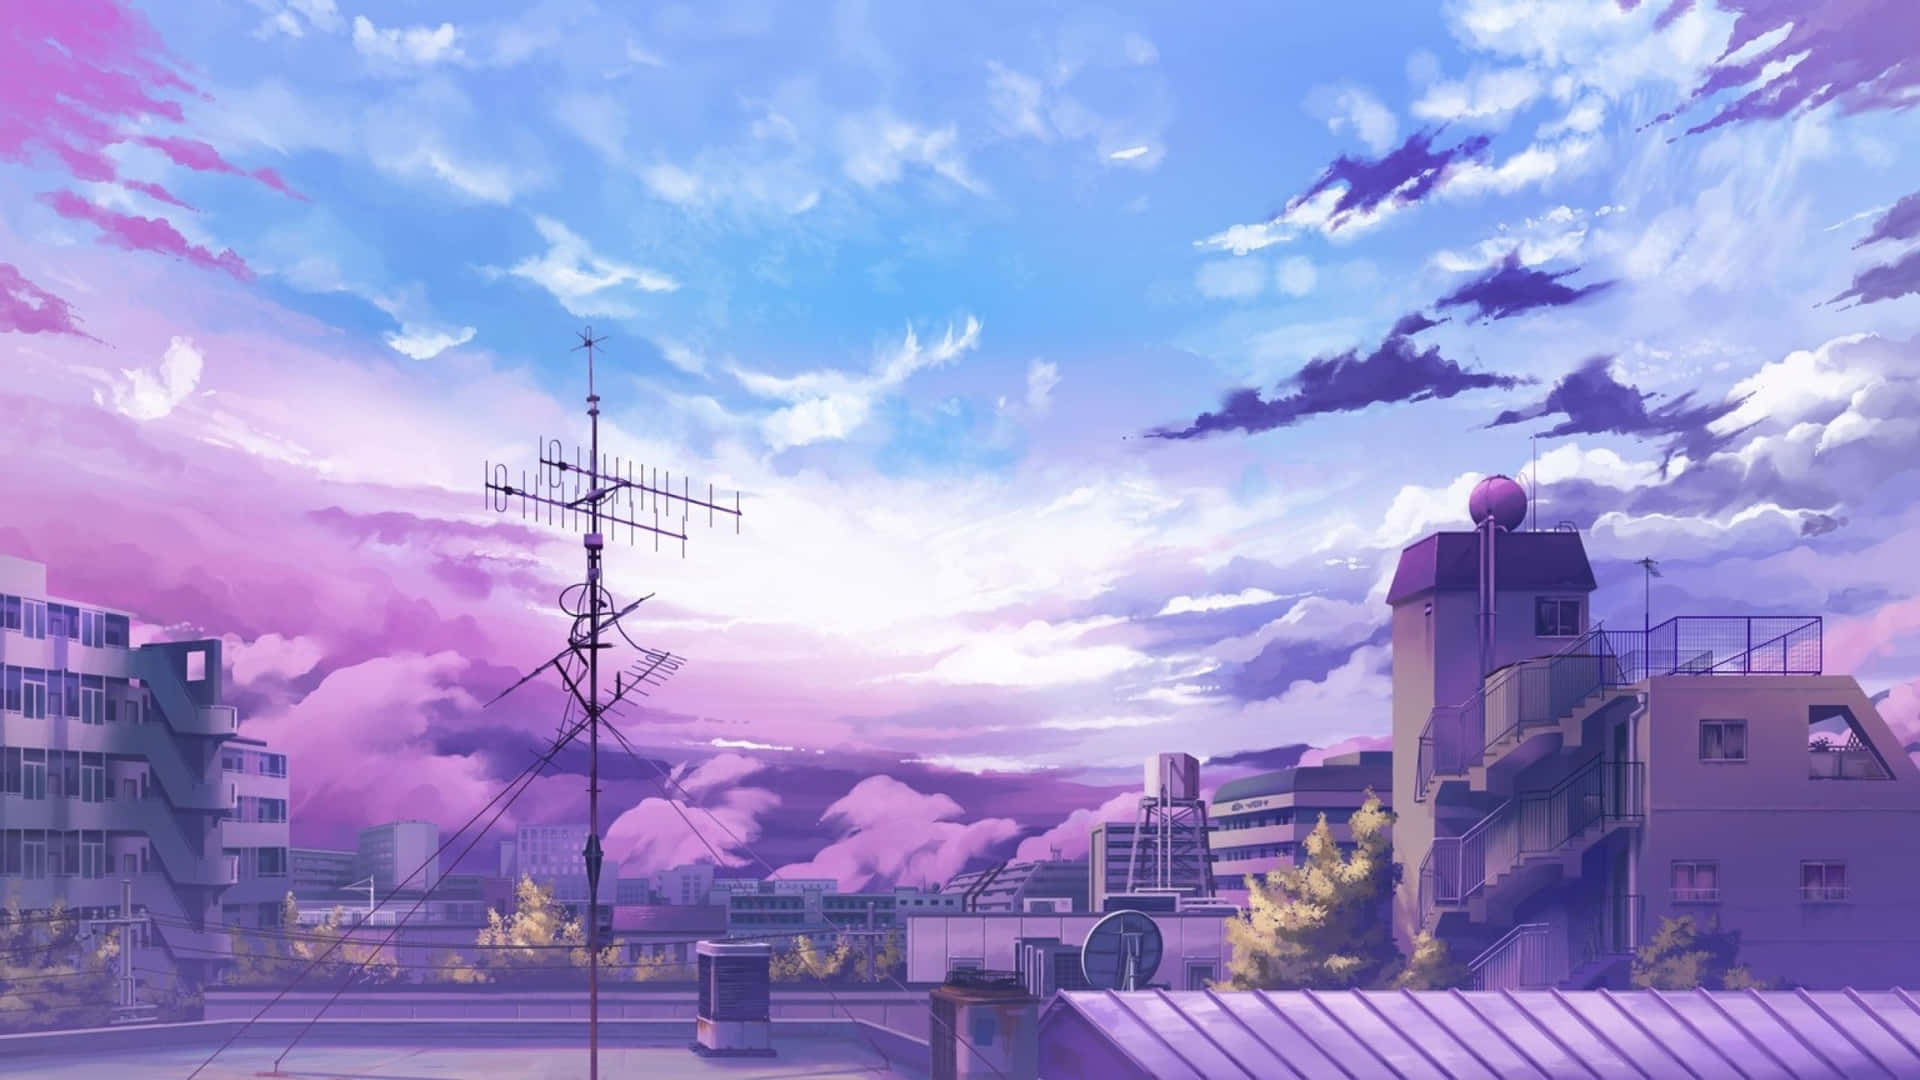 Unfondo De Escritorio Brillante Y Vibrante Inspirado En Anime. Fondo de pantalla